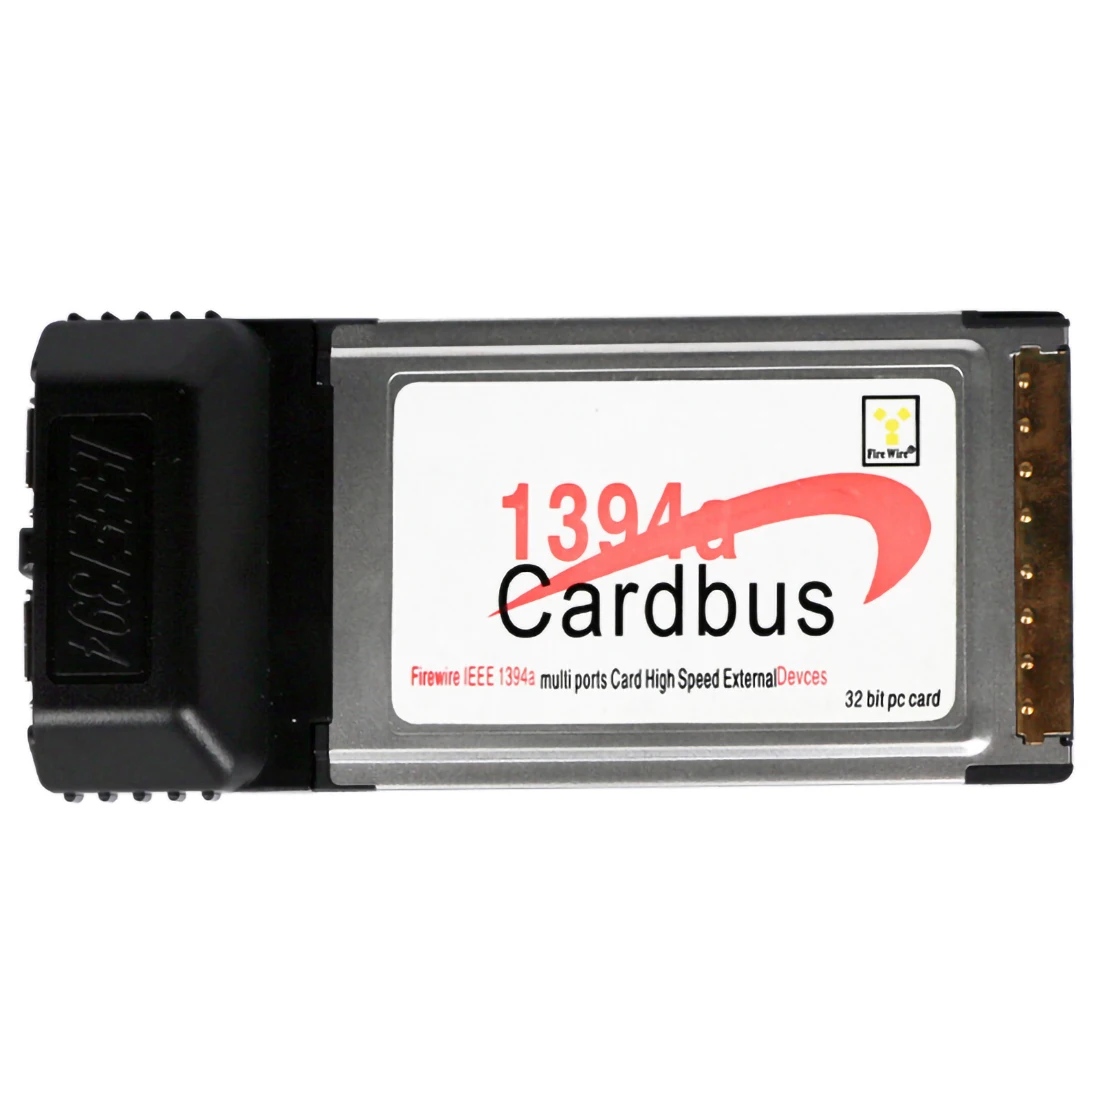 2 порта 6 Pin 1394A IEEE 1394 CardBus карта 54 мм для PCMCIA цифровой камеры DV видеокамеры жесткие диски съемные диски ноутбук ПК